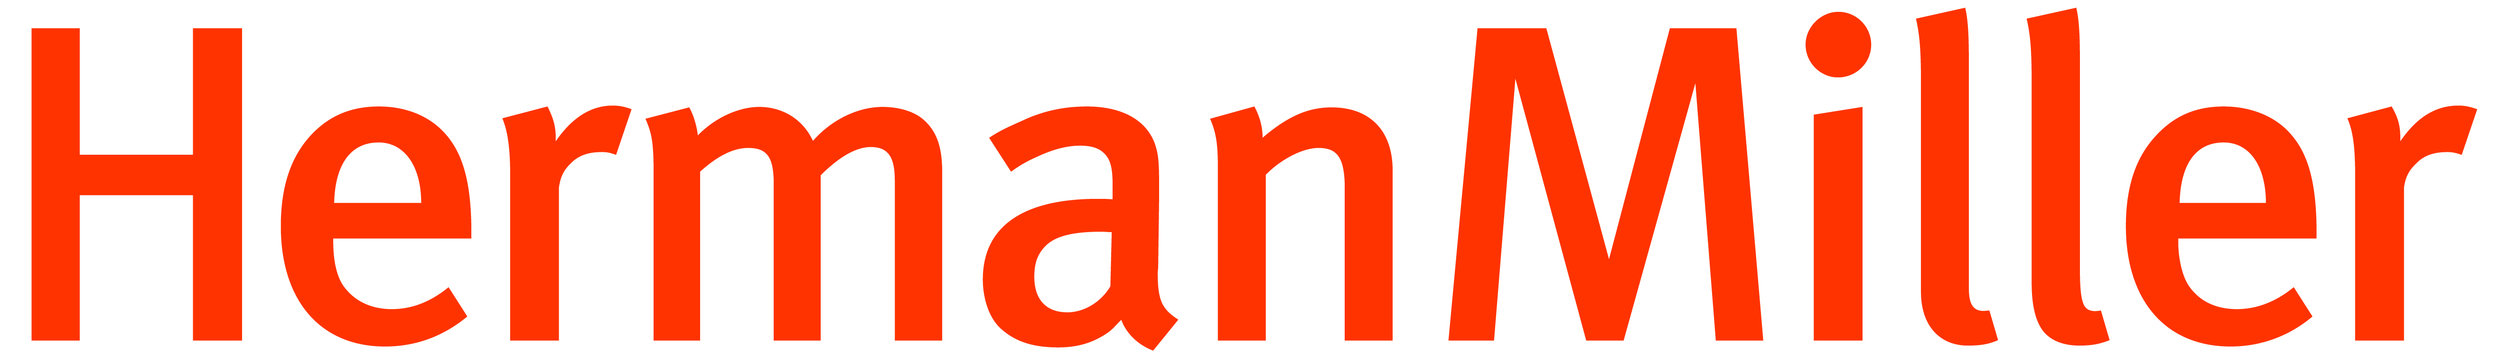 Herman Miller Logo.jpg